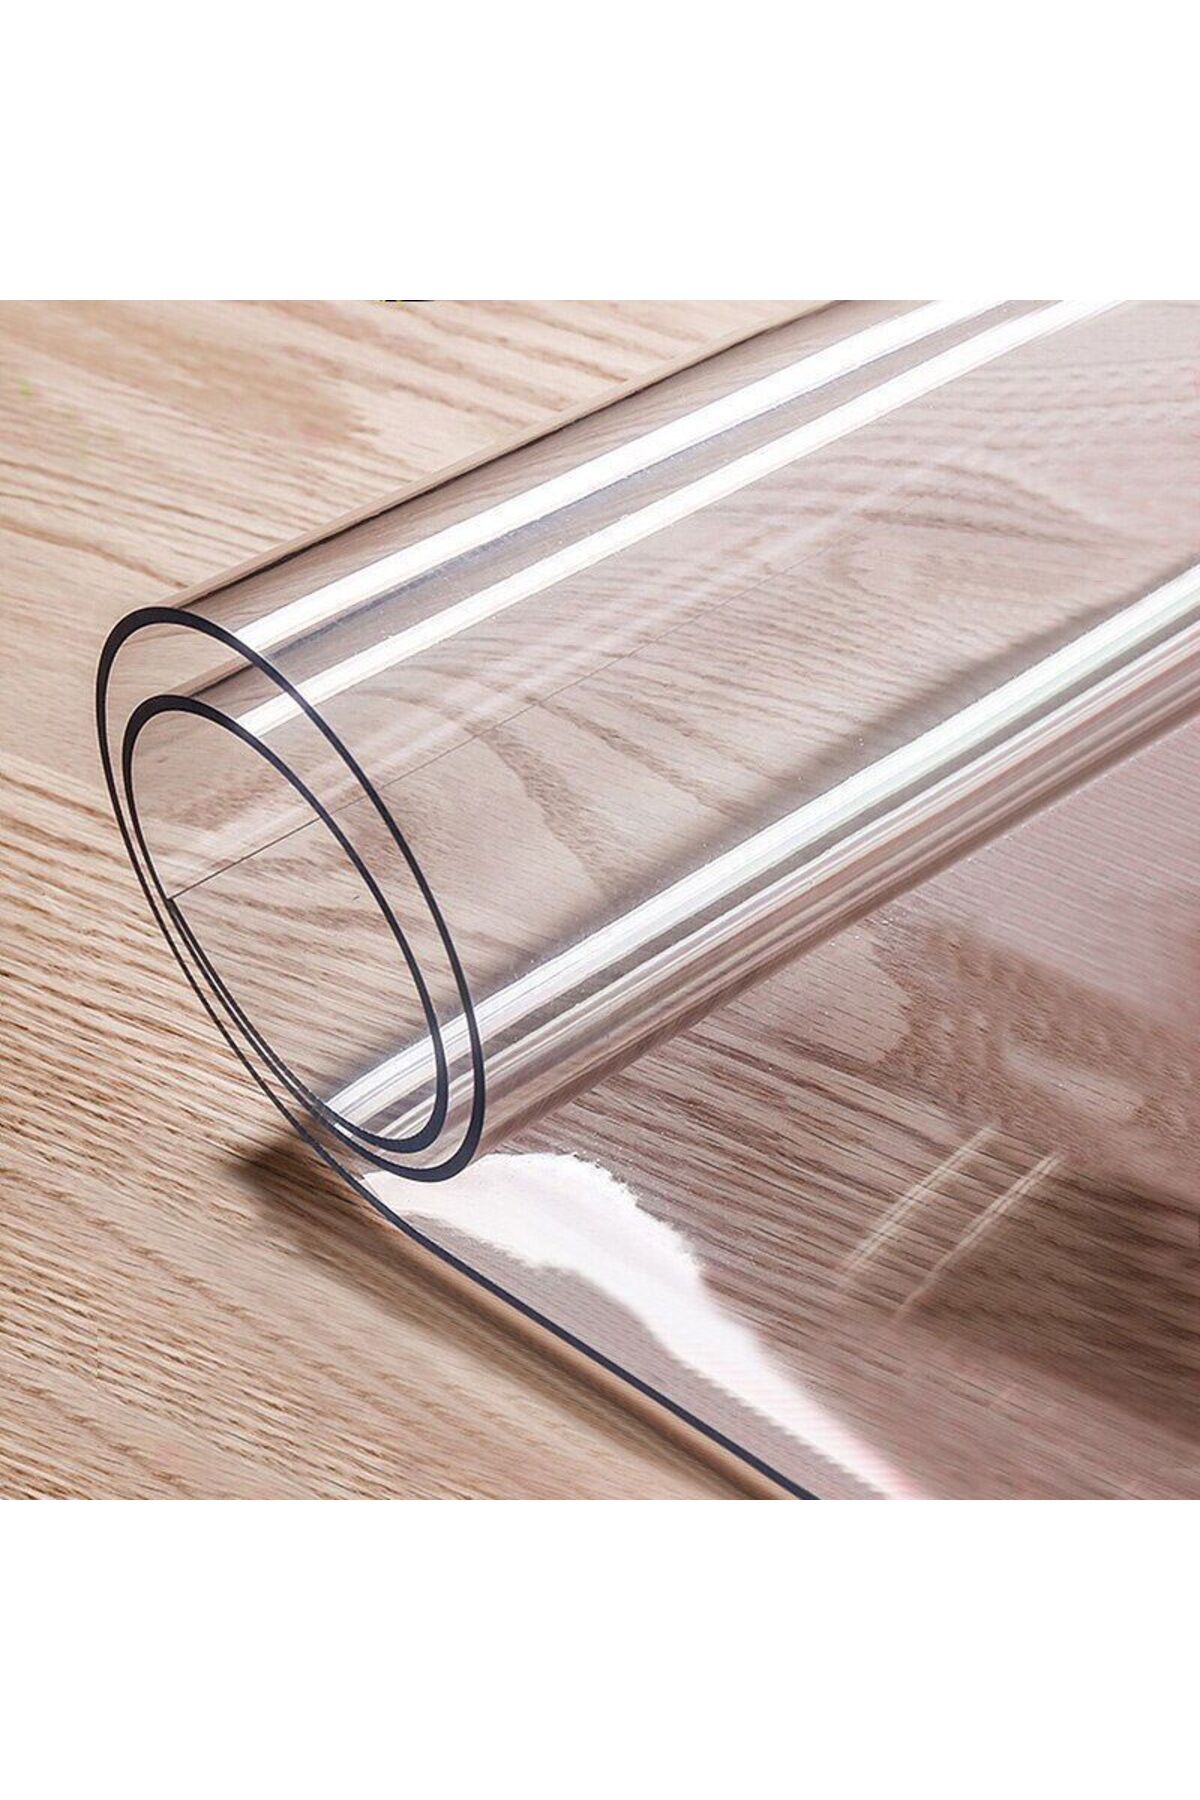 гибкое стекло на стол 3 мм